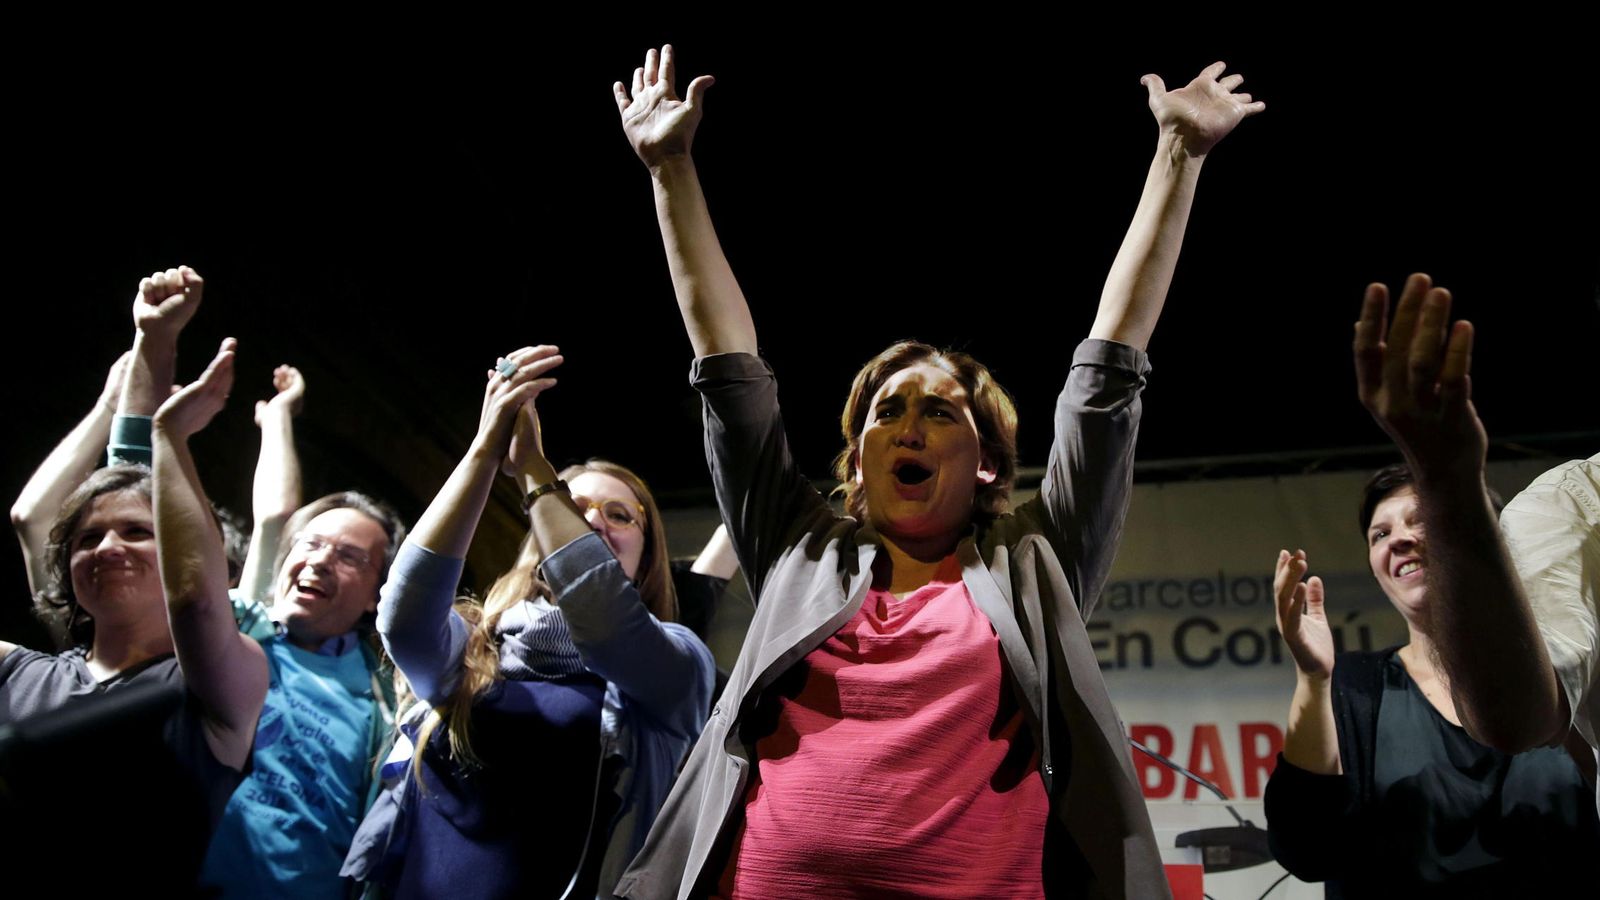 Foto: Ada Colau, de Barcelona en Comú, se dirige a sus simpatizantes tras convertirse en la primera mujer que ha ganado las elecciones municipales en Barcelona. (Efe)